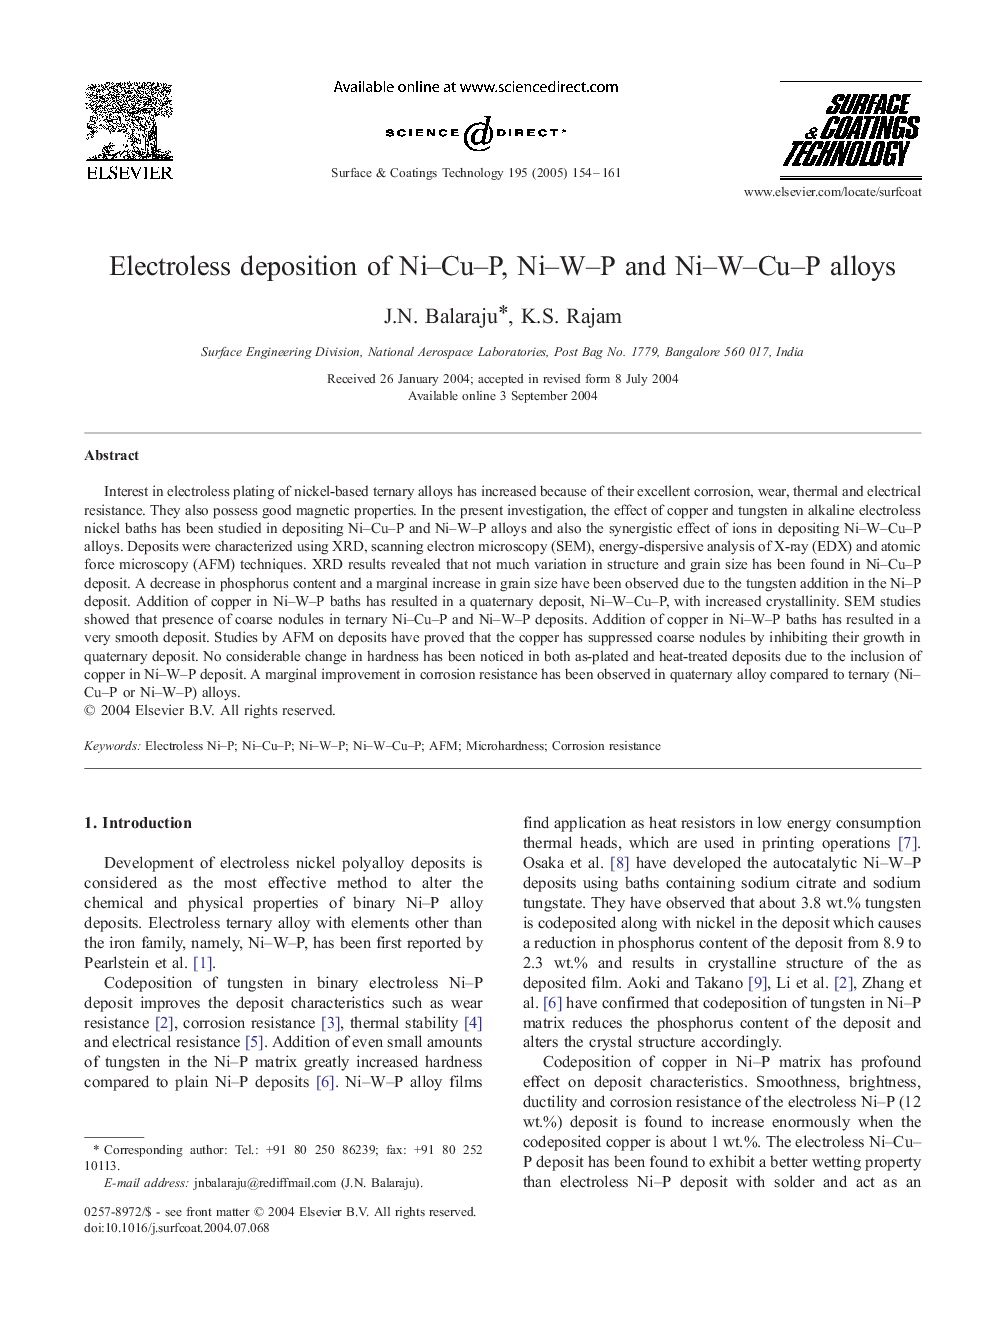 Electroless deposition of Ni-Cu-P, Ni-W-P and Ni-W-Cu-P alloys